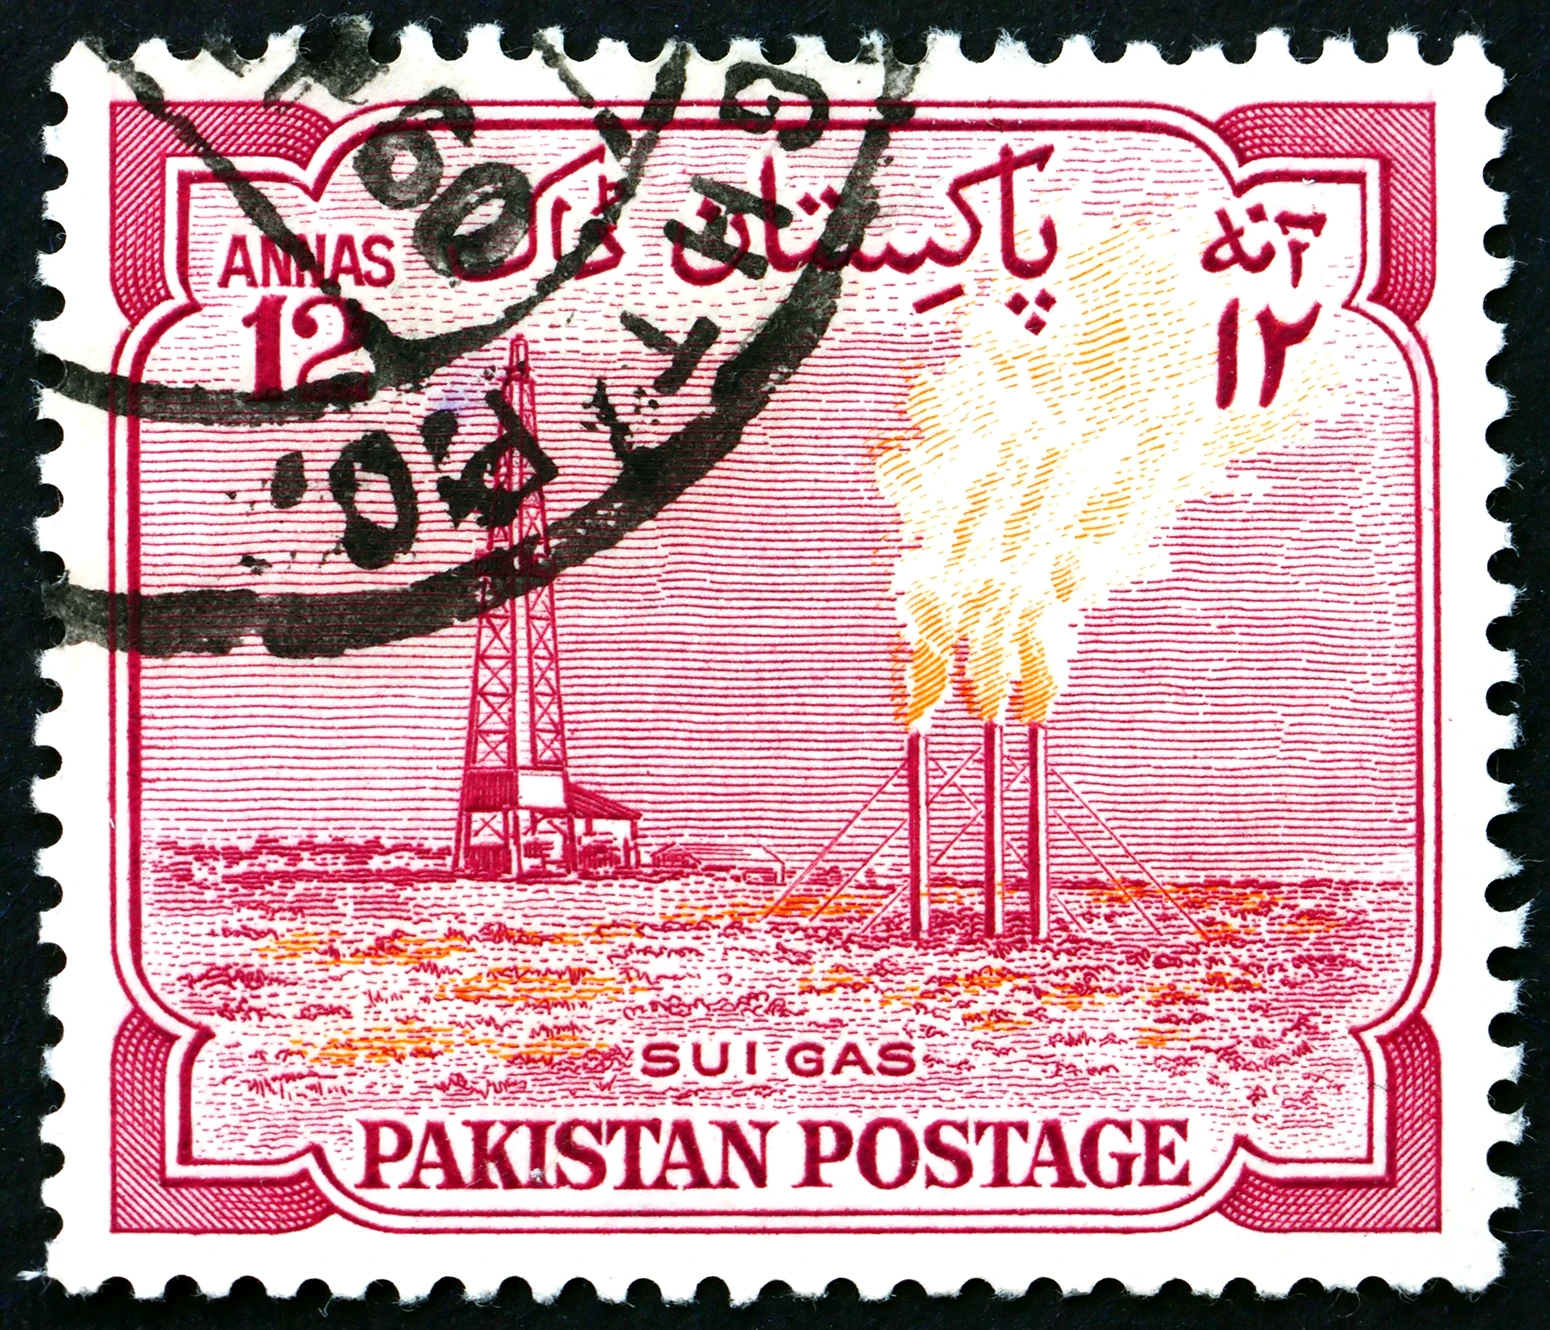 Πακιστανικό γραμματόσημο που δείχνει το εργοστάσιο αερίου Sui, περίπου το 1955.